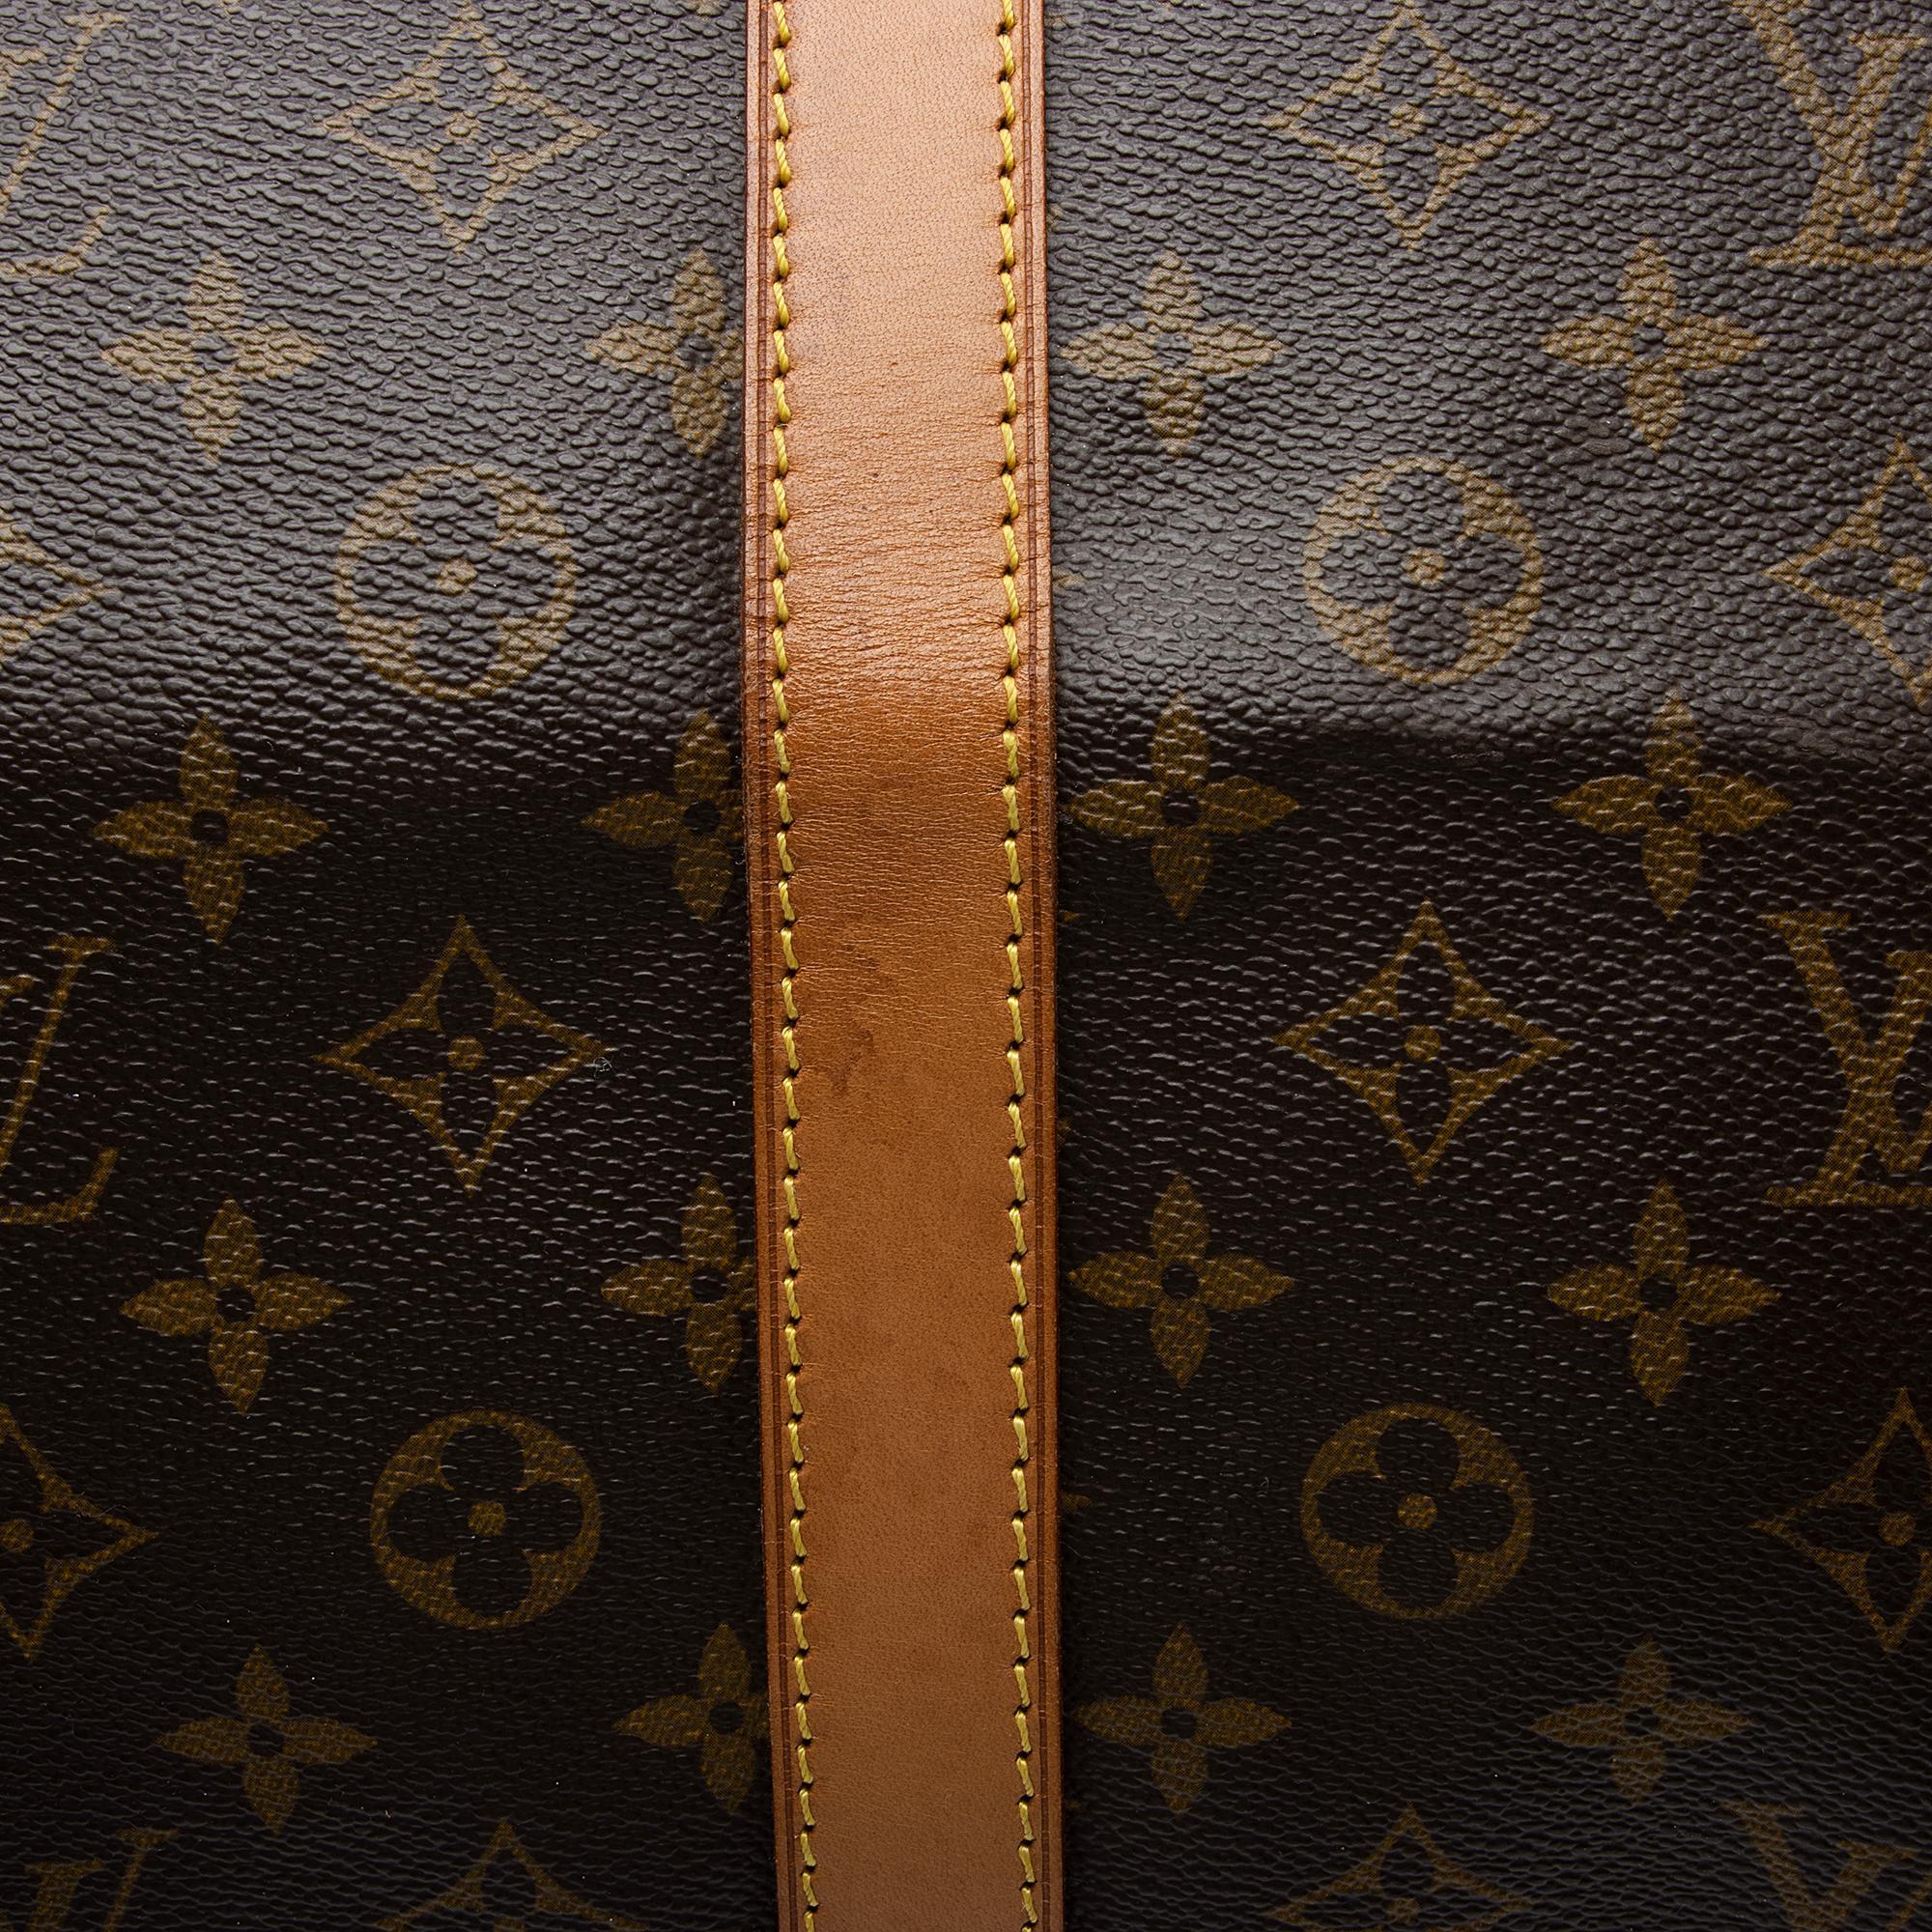 Vintage Louis Vuitton Keepall 60 Monogram Duffel Bag 4MQ9D8R